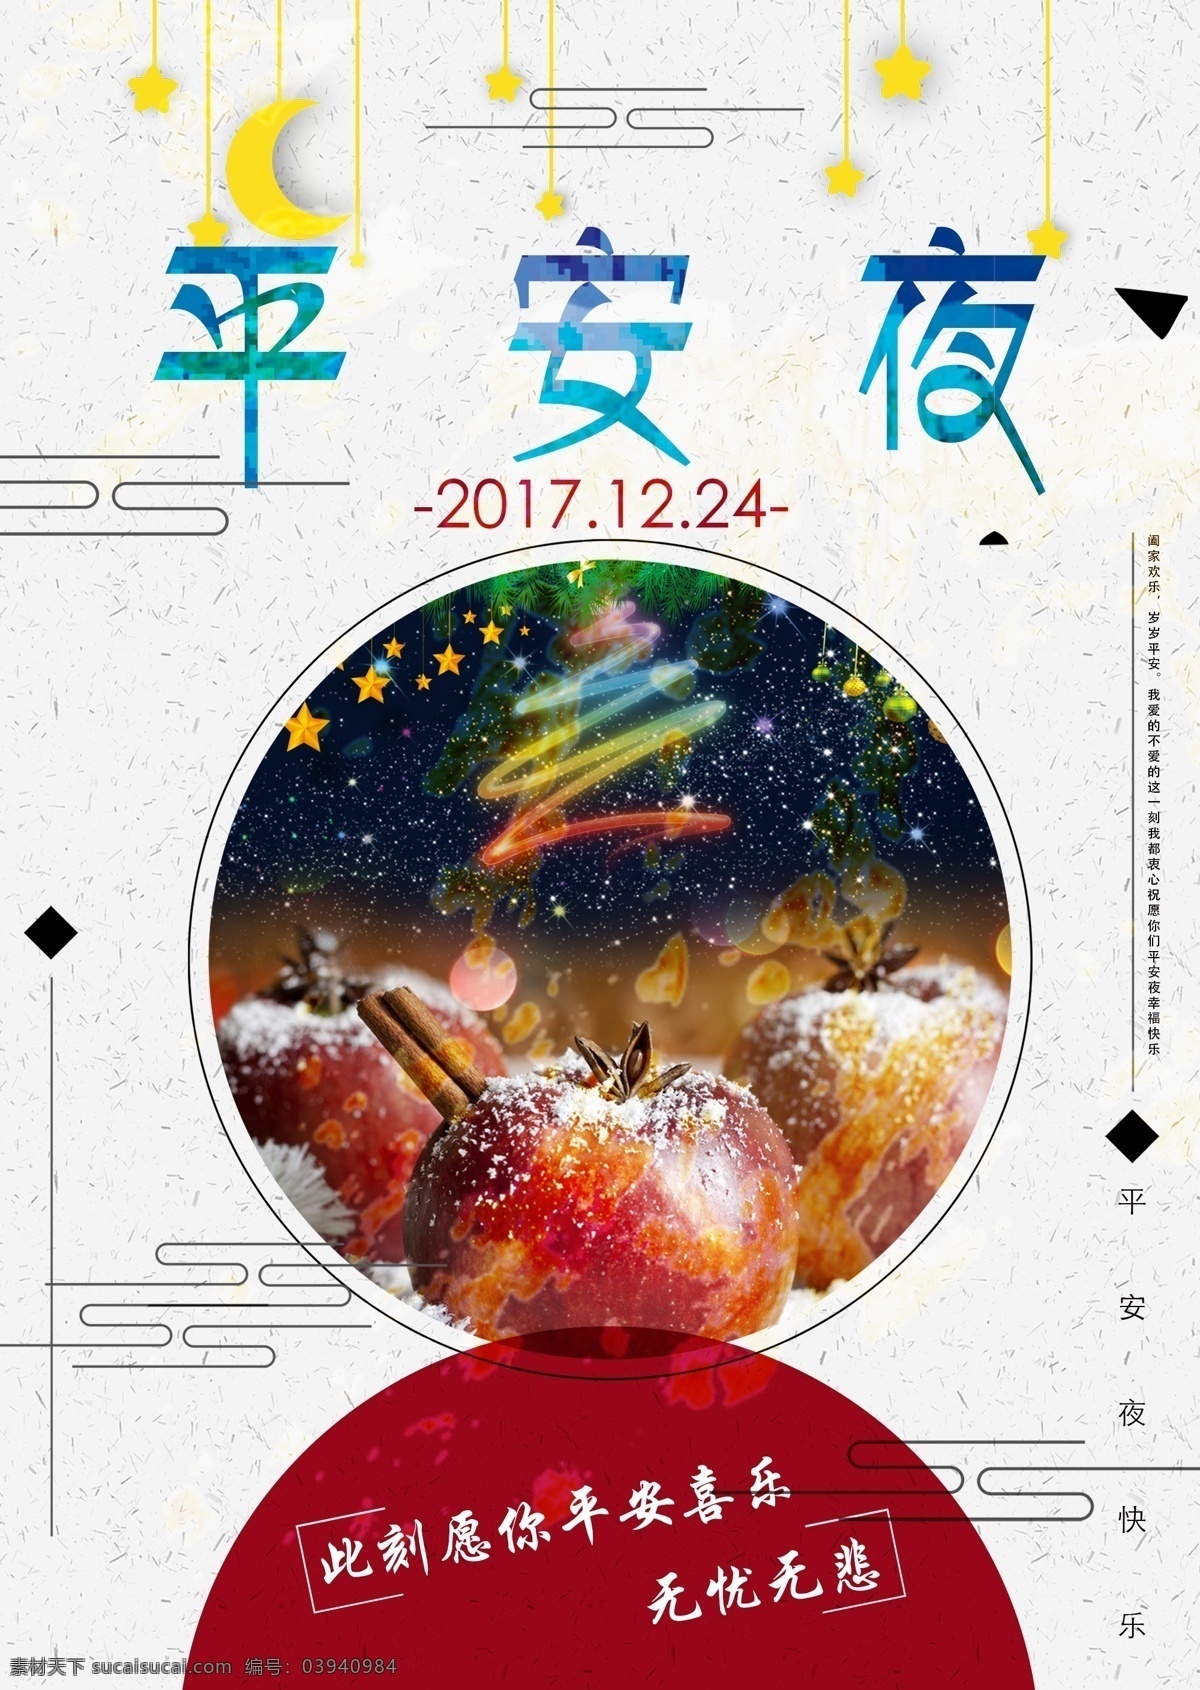 平安 喜乐 平安夜 海报 祝福 西方节日 简约 苹果